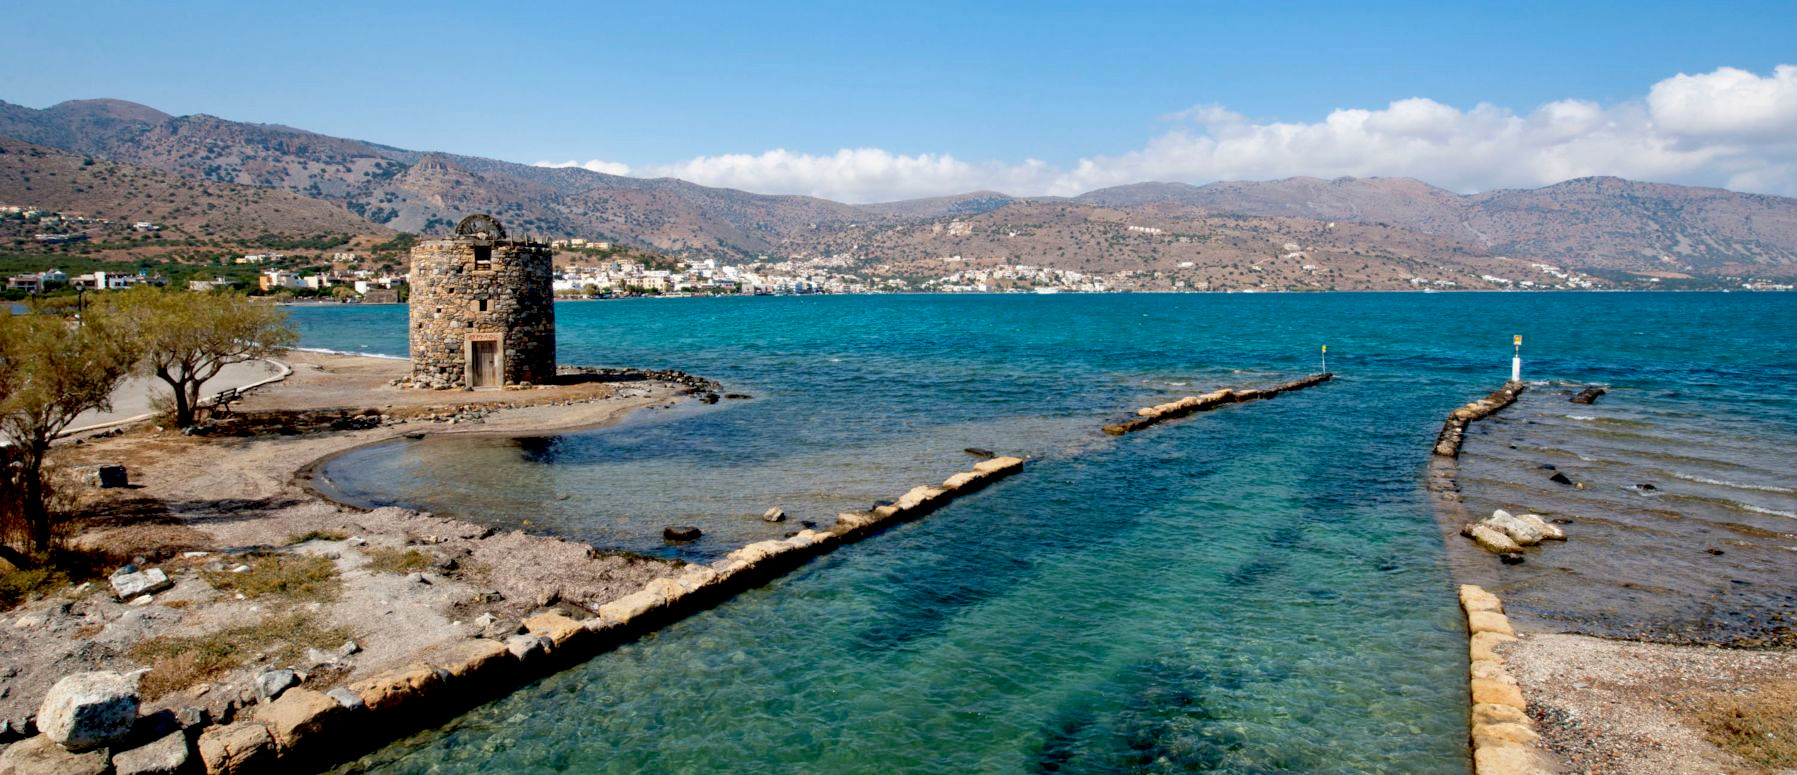 Crete Elounda partial View 